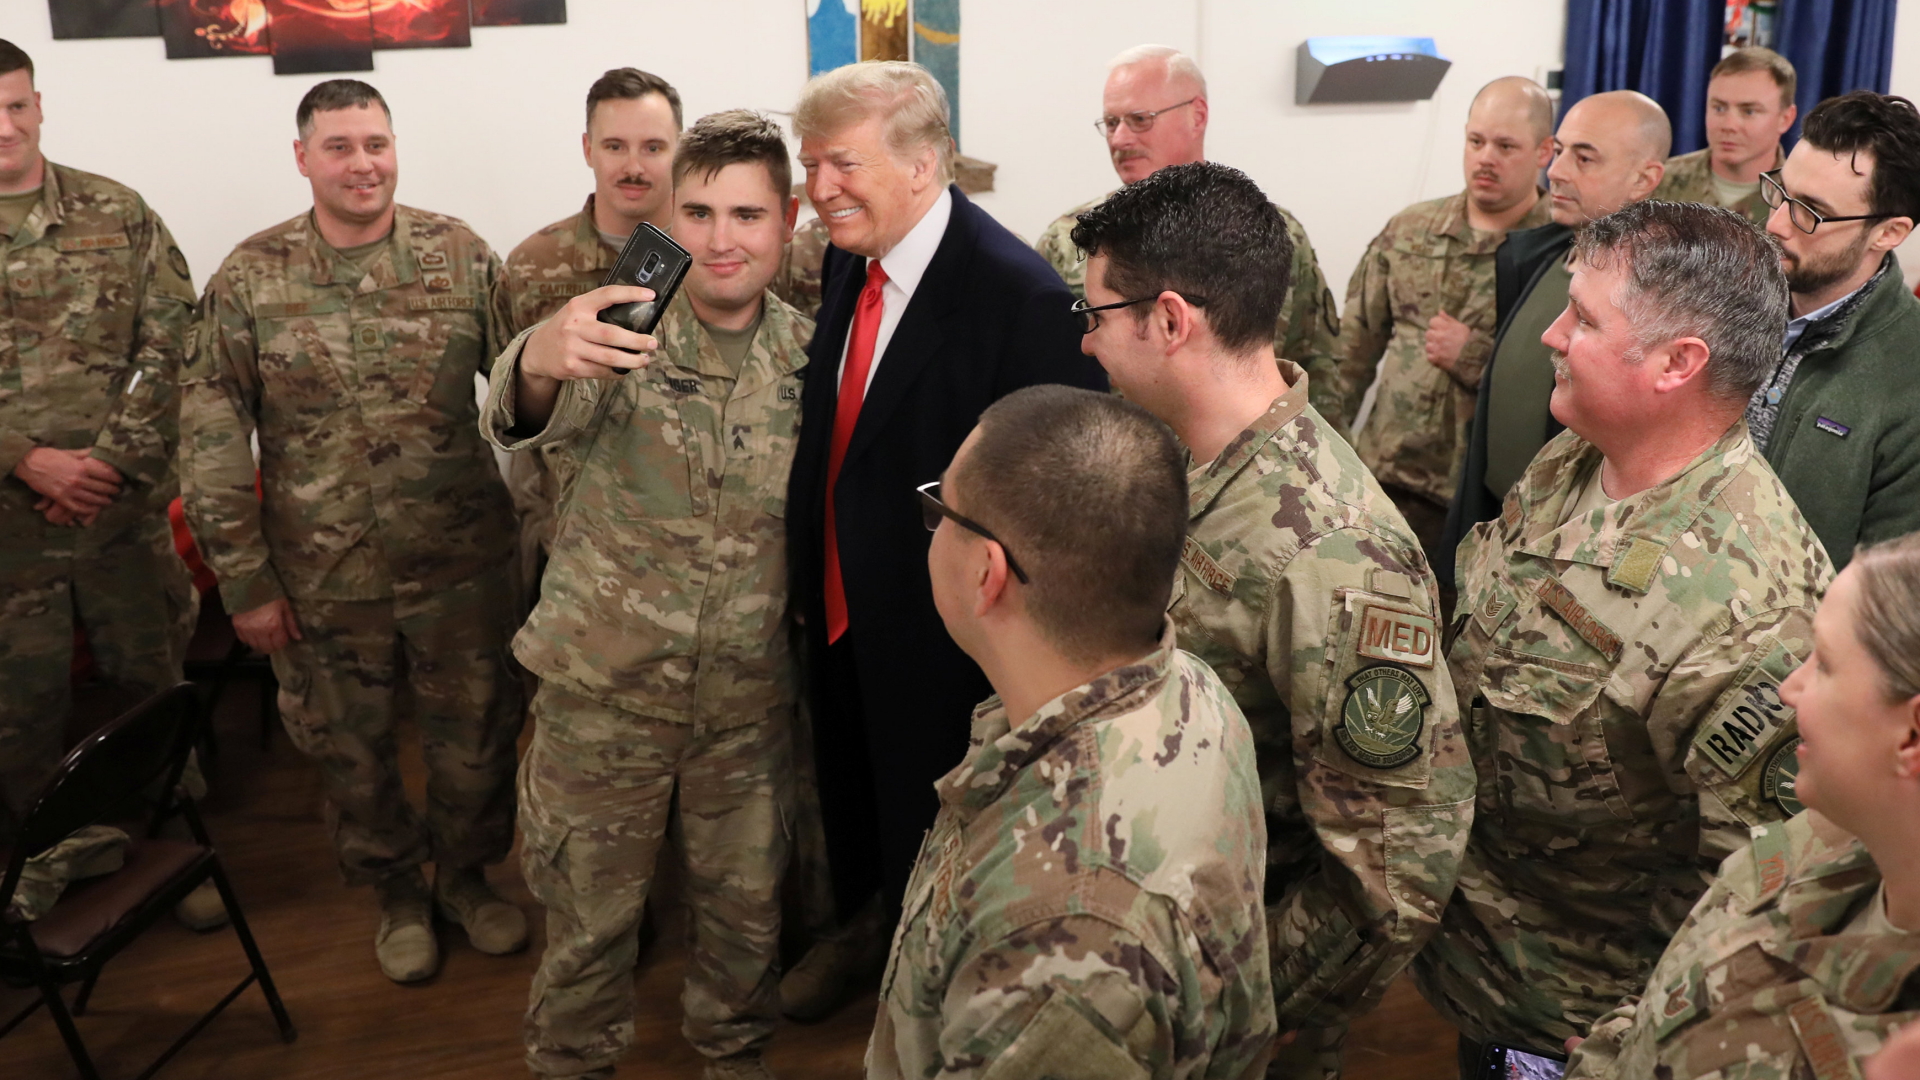 Ein US-Soldat im Irak macht ein Selfie mit Donald Trump. | Bildquelle: REUTERS